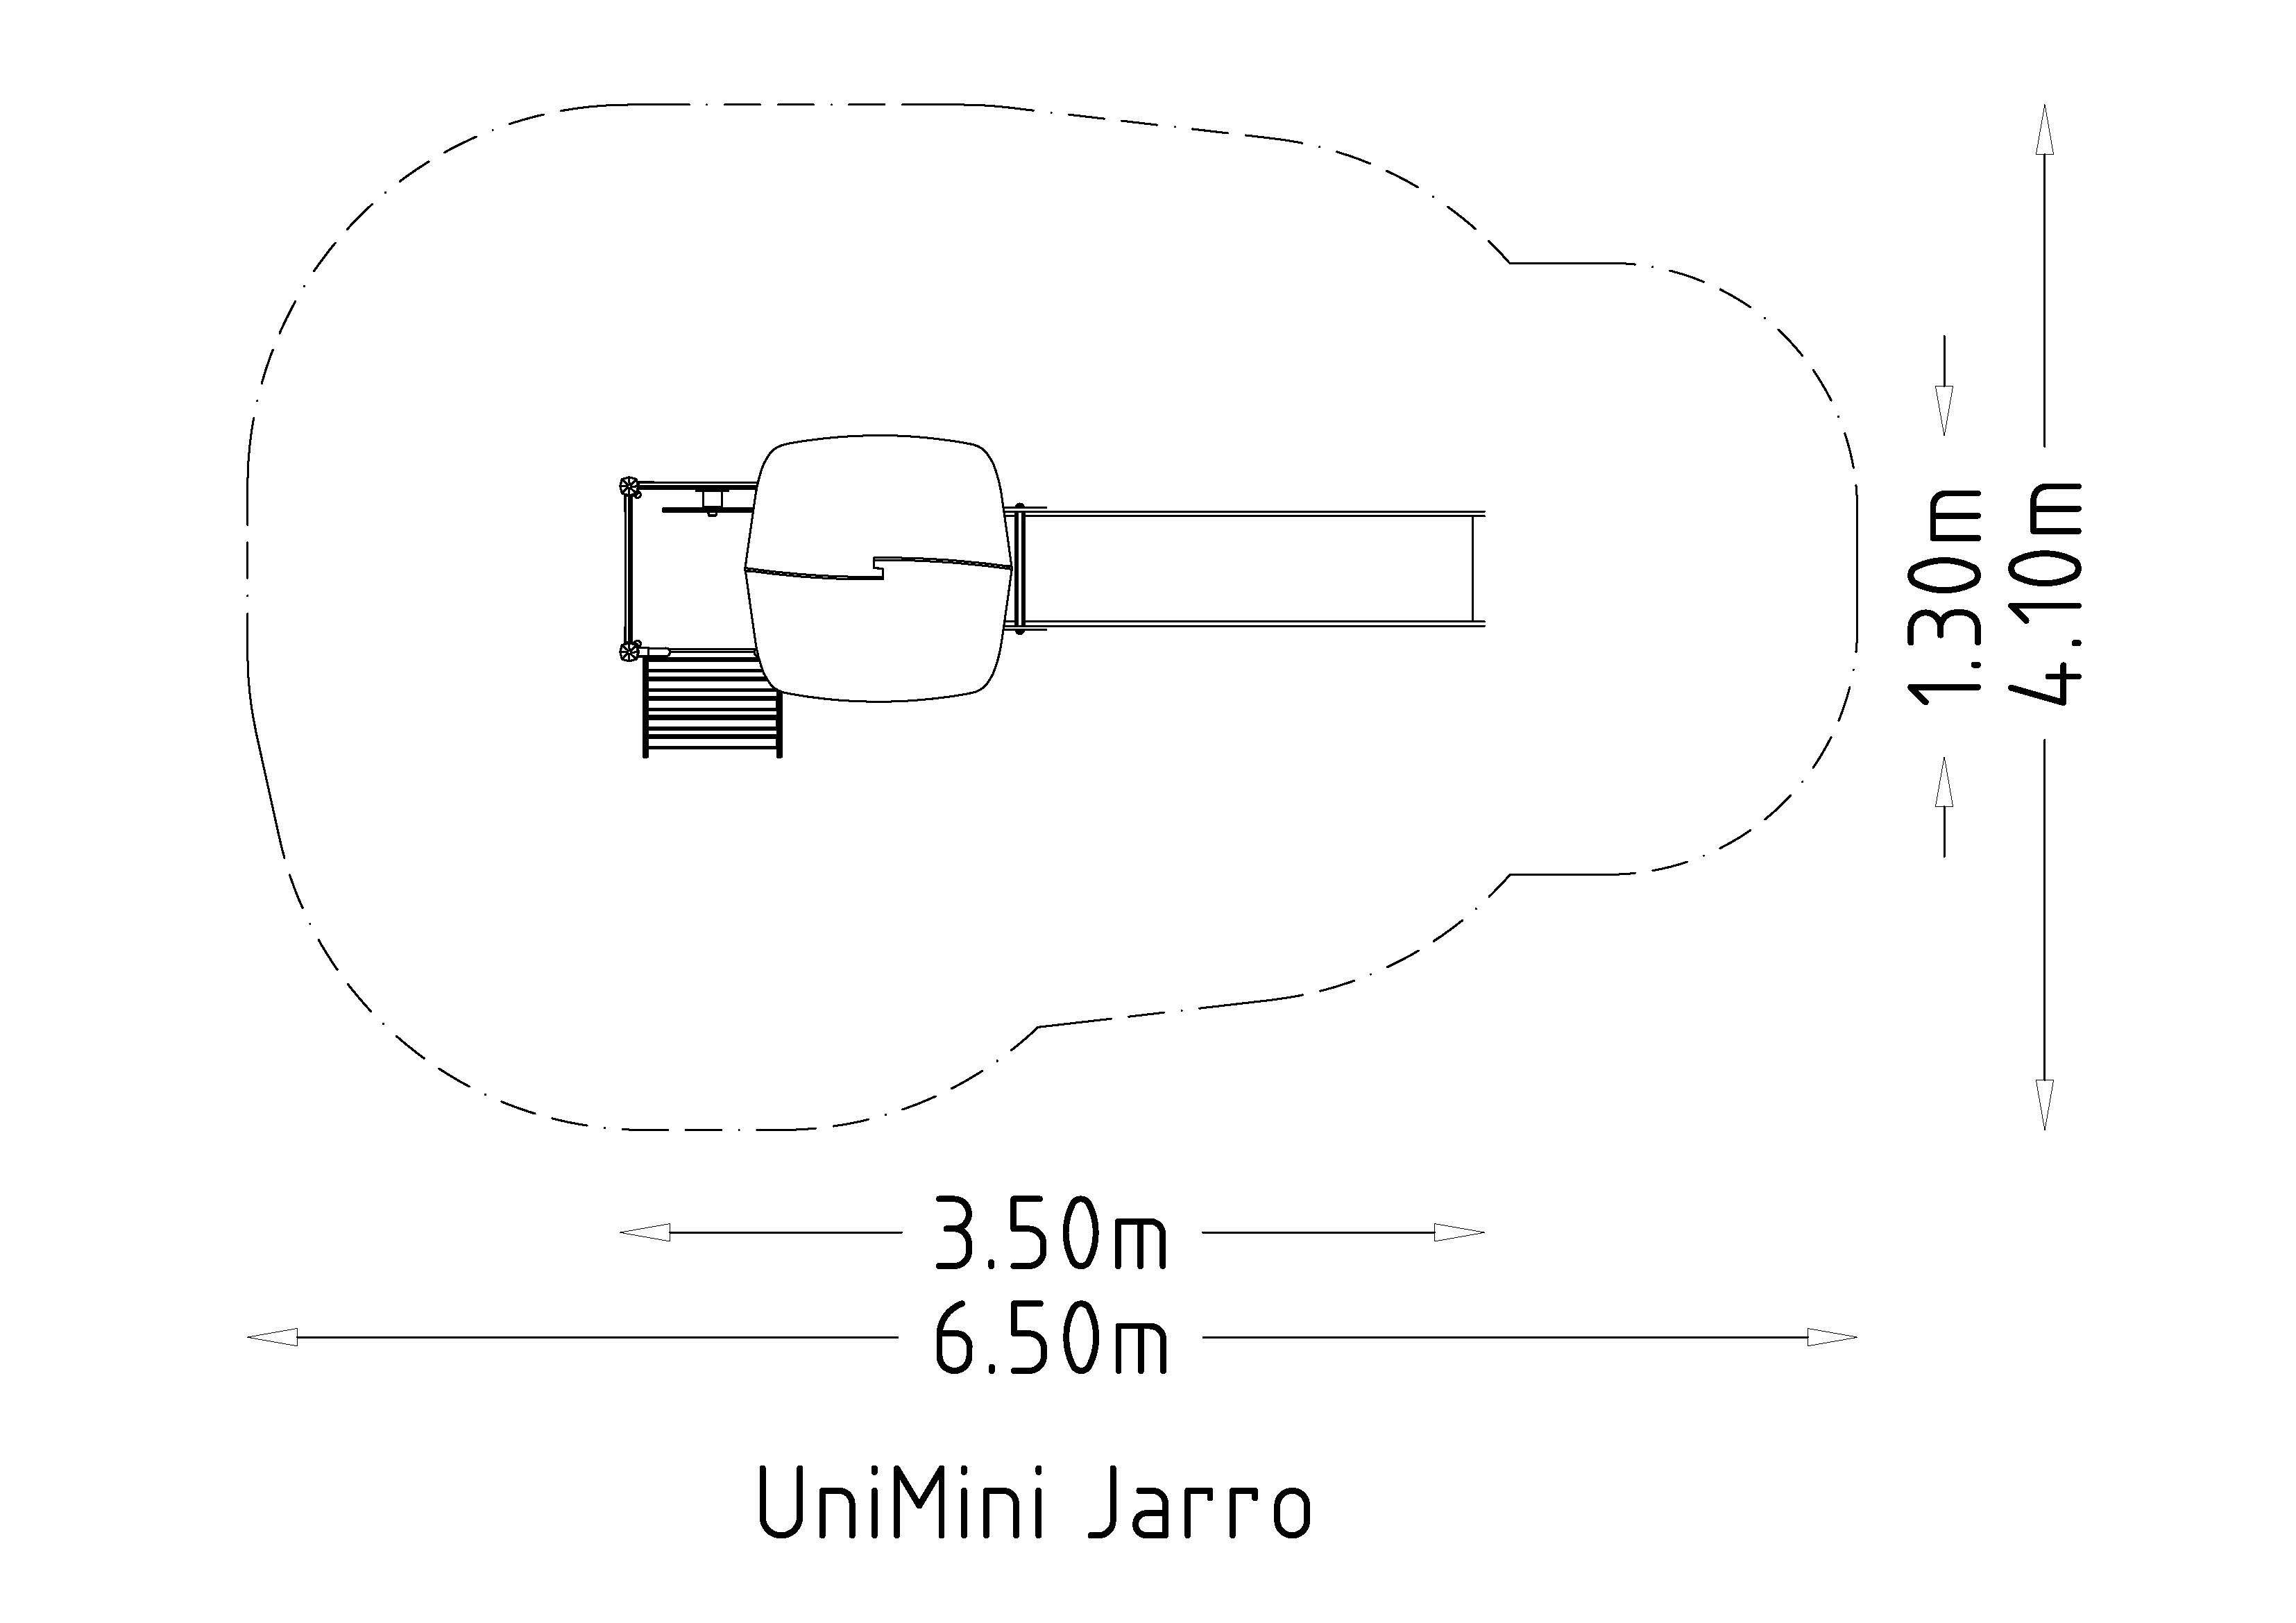 UniMini Jarro